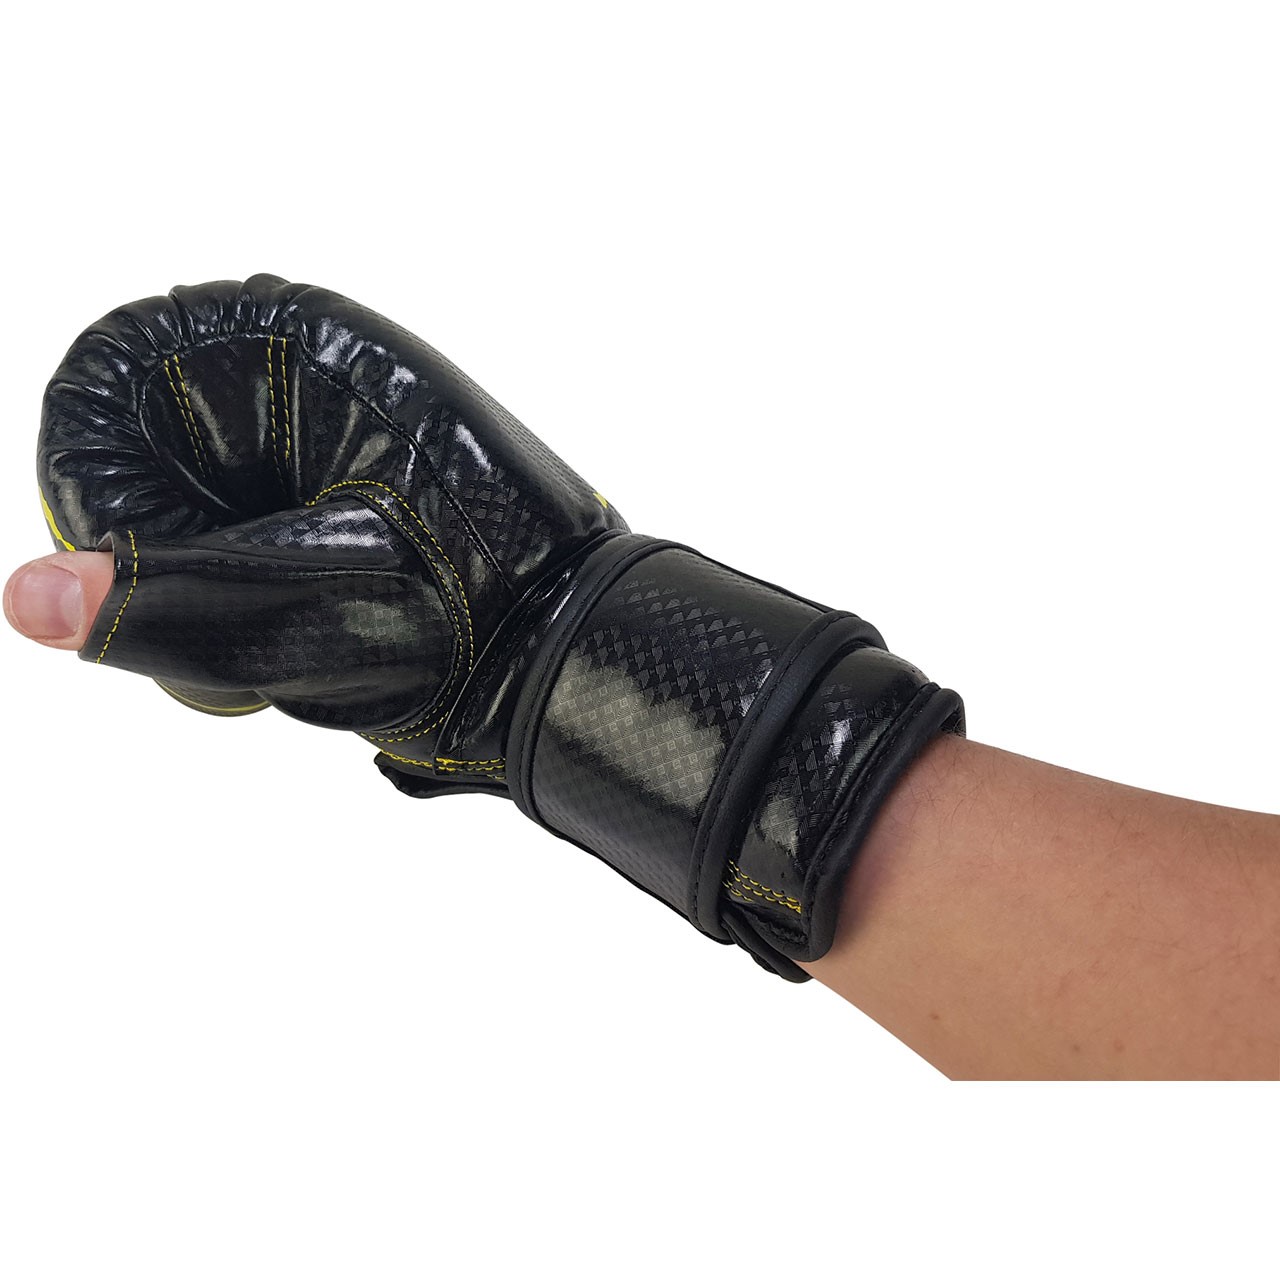 Bruce Lee Bag & Sparring Gloves